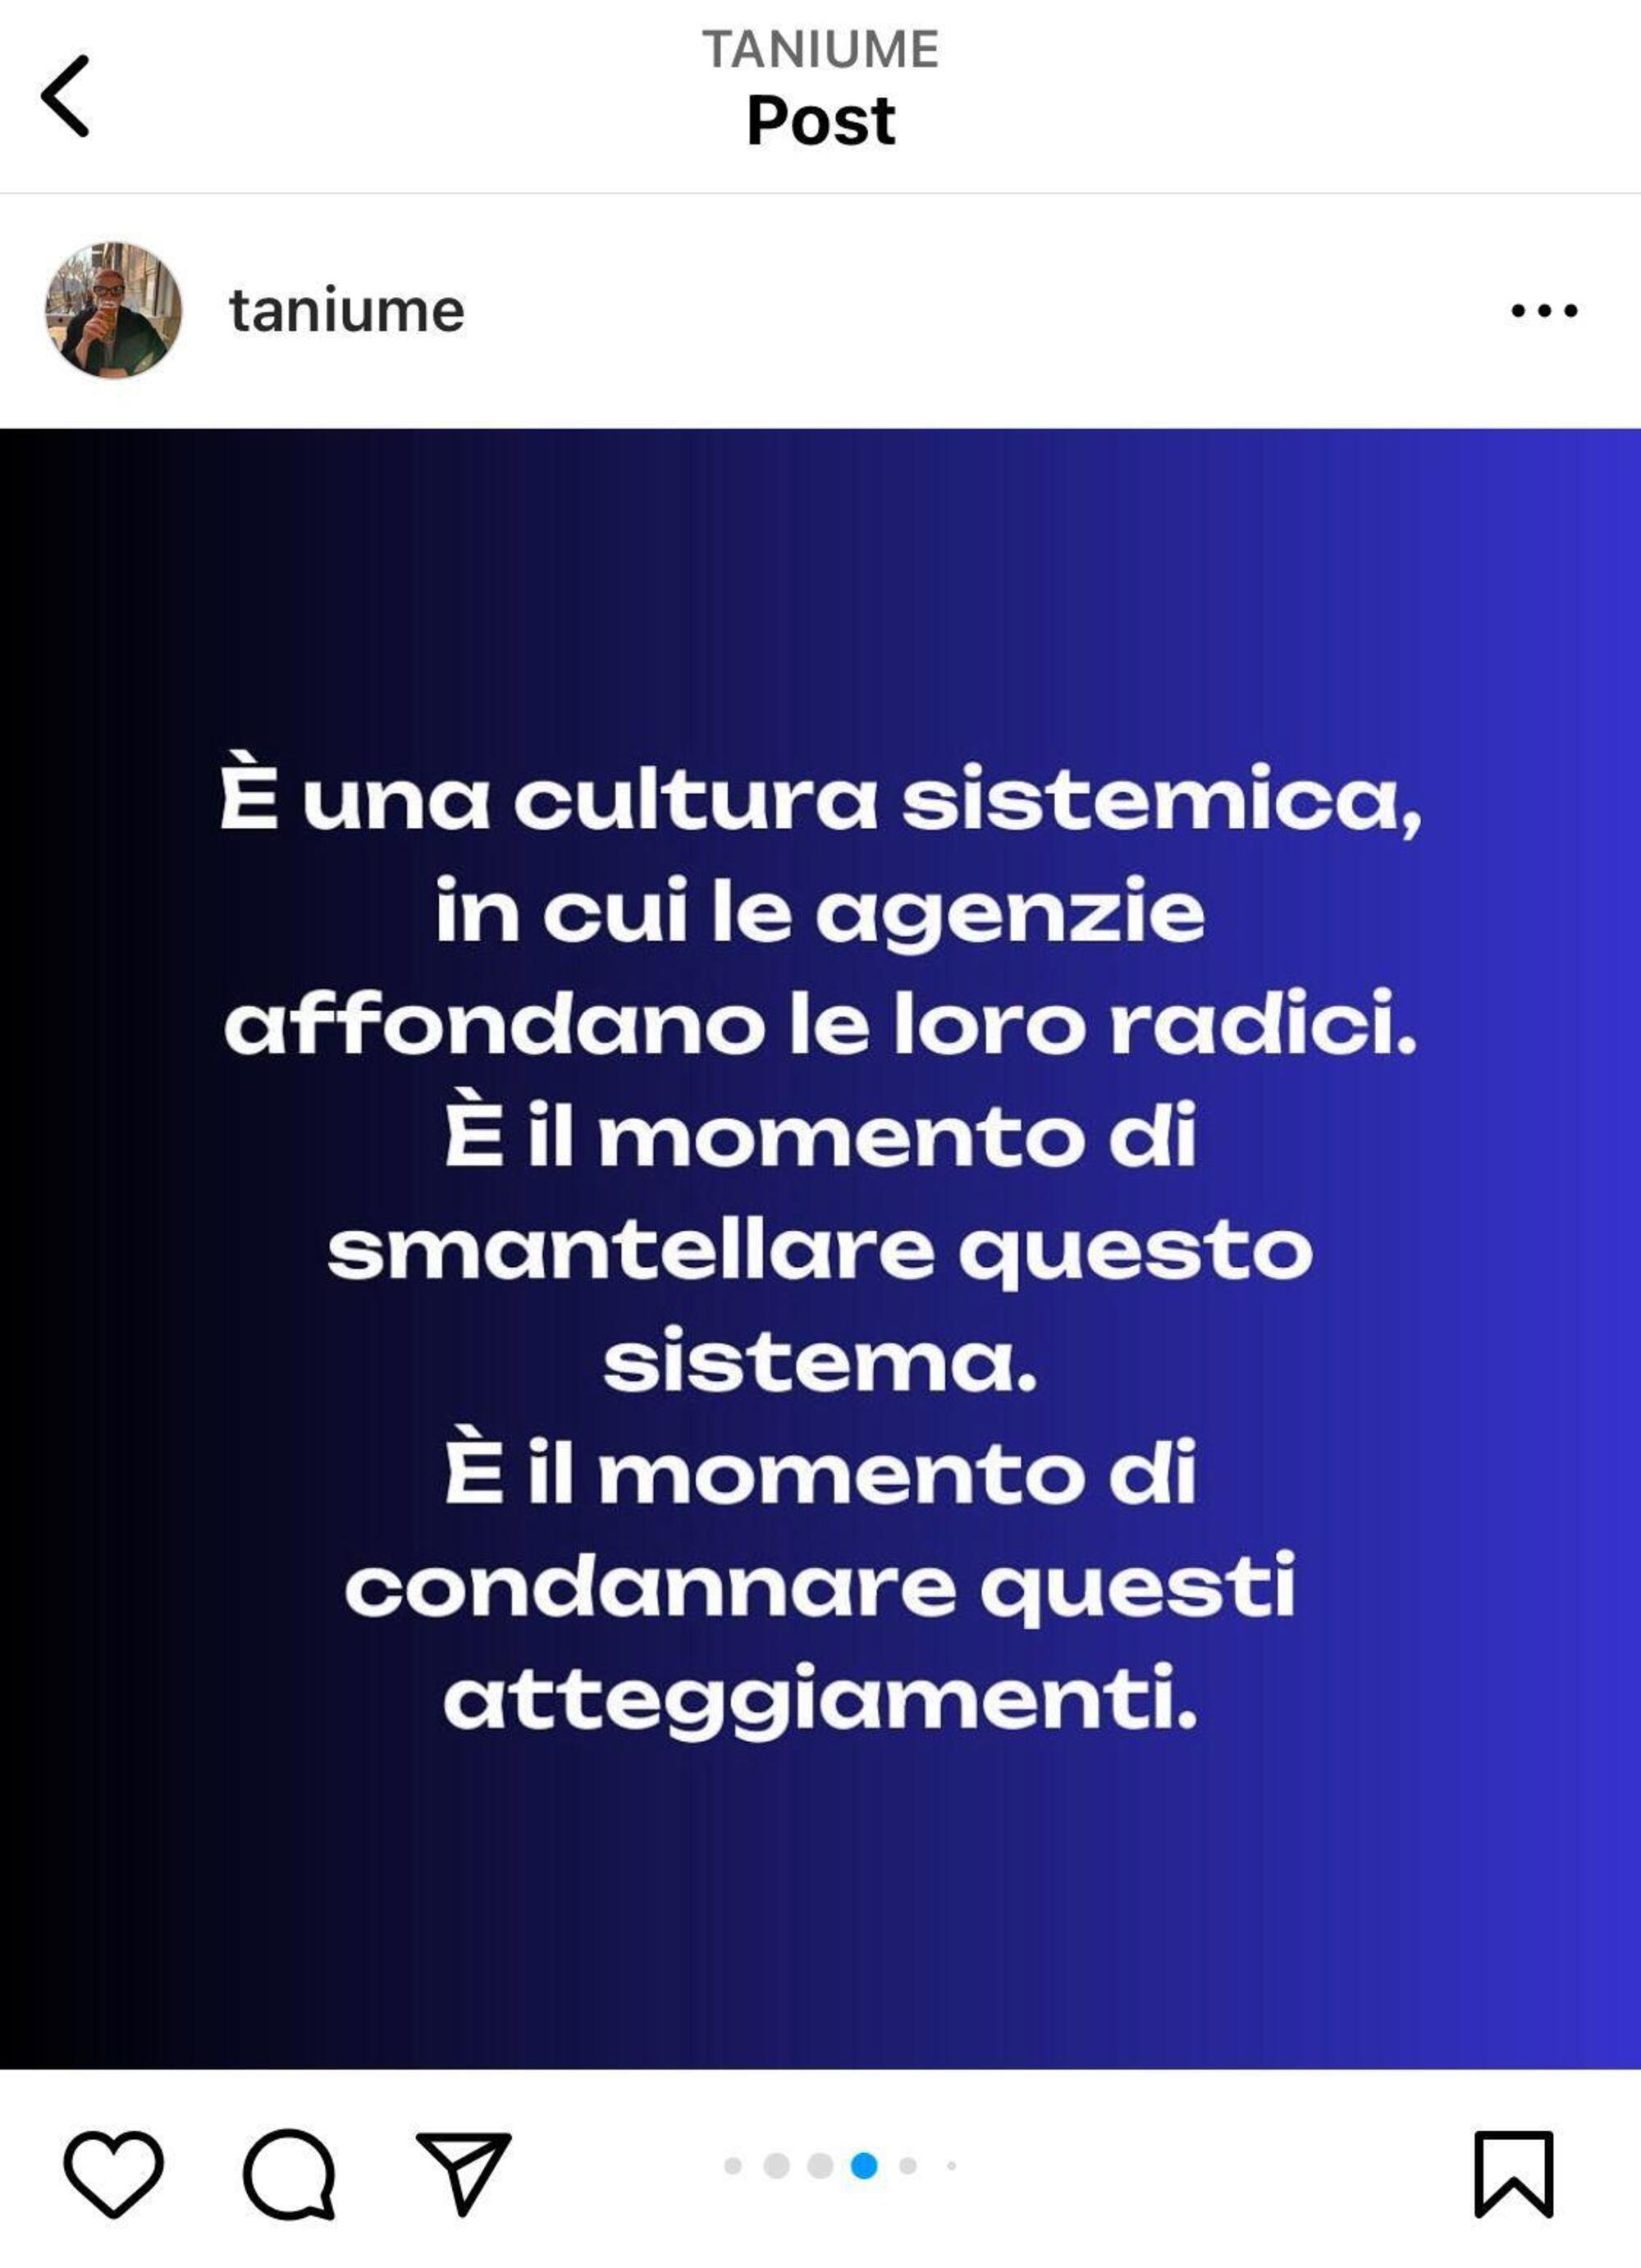 Il post di denuncia delle molestie nelle agenzie pubblicitarie italiane di Tania Taniume sulla sua pagina Instagram